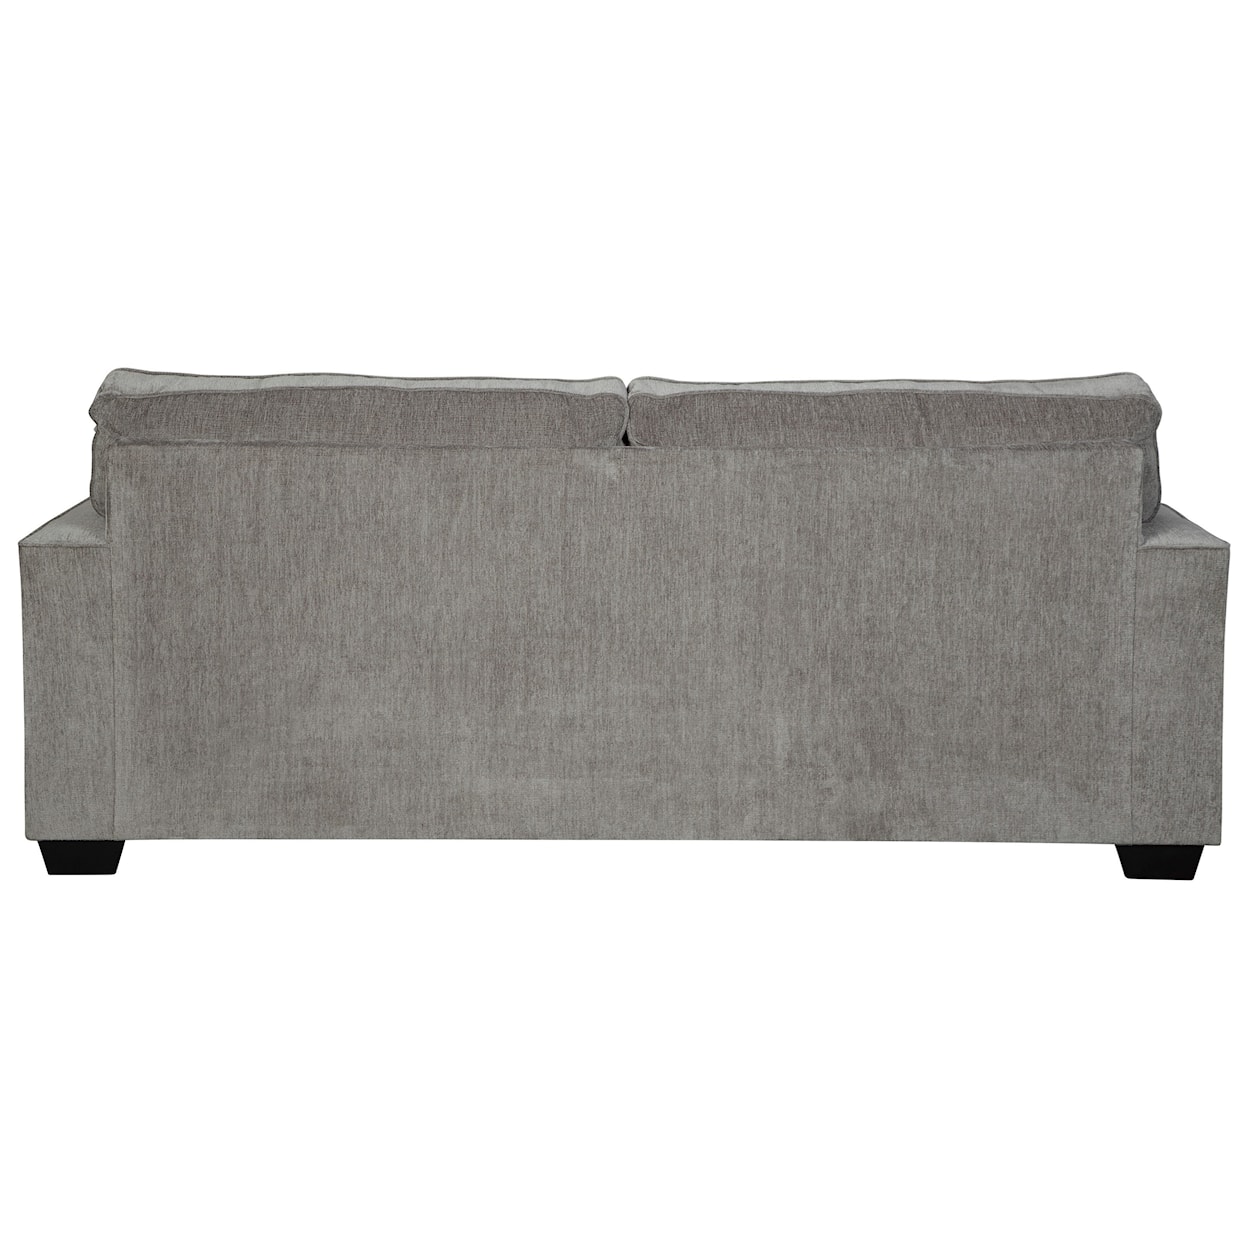 Ashley Furniture Signature Design Altari Sofa